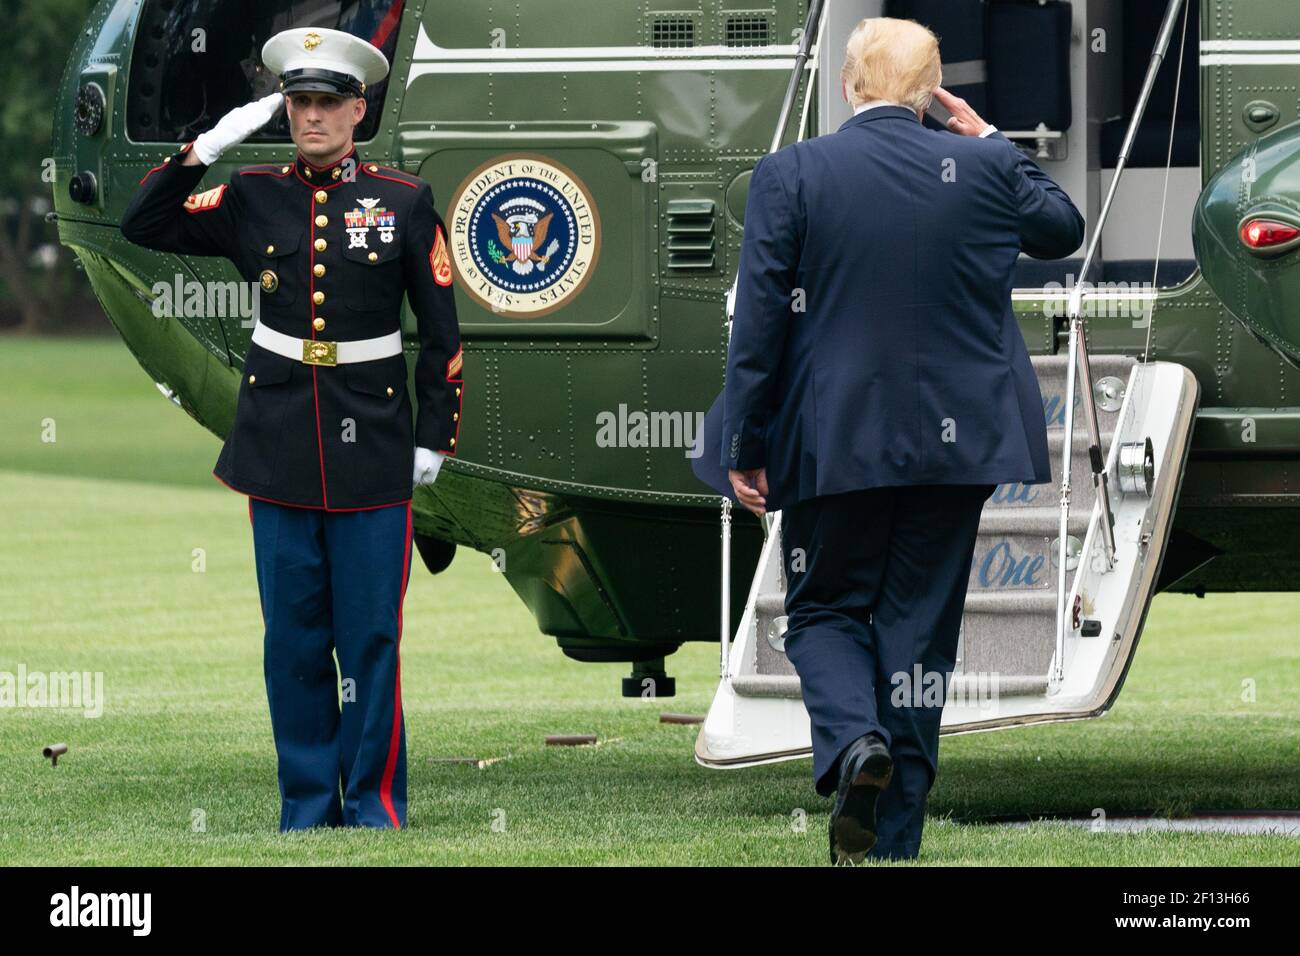 Präsident Donald Trump kehrt zur Begrüßung zurück, als er am Mittwoch, dem 17 2019. Juli, an der Marine One auf dem South Lawn des Weißen Hauses antritt, um seine Reise nach North Carolina zu beginnen. Stockfoto